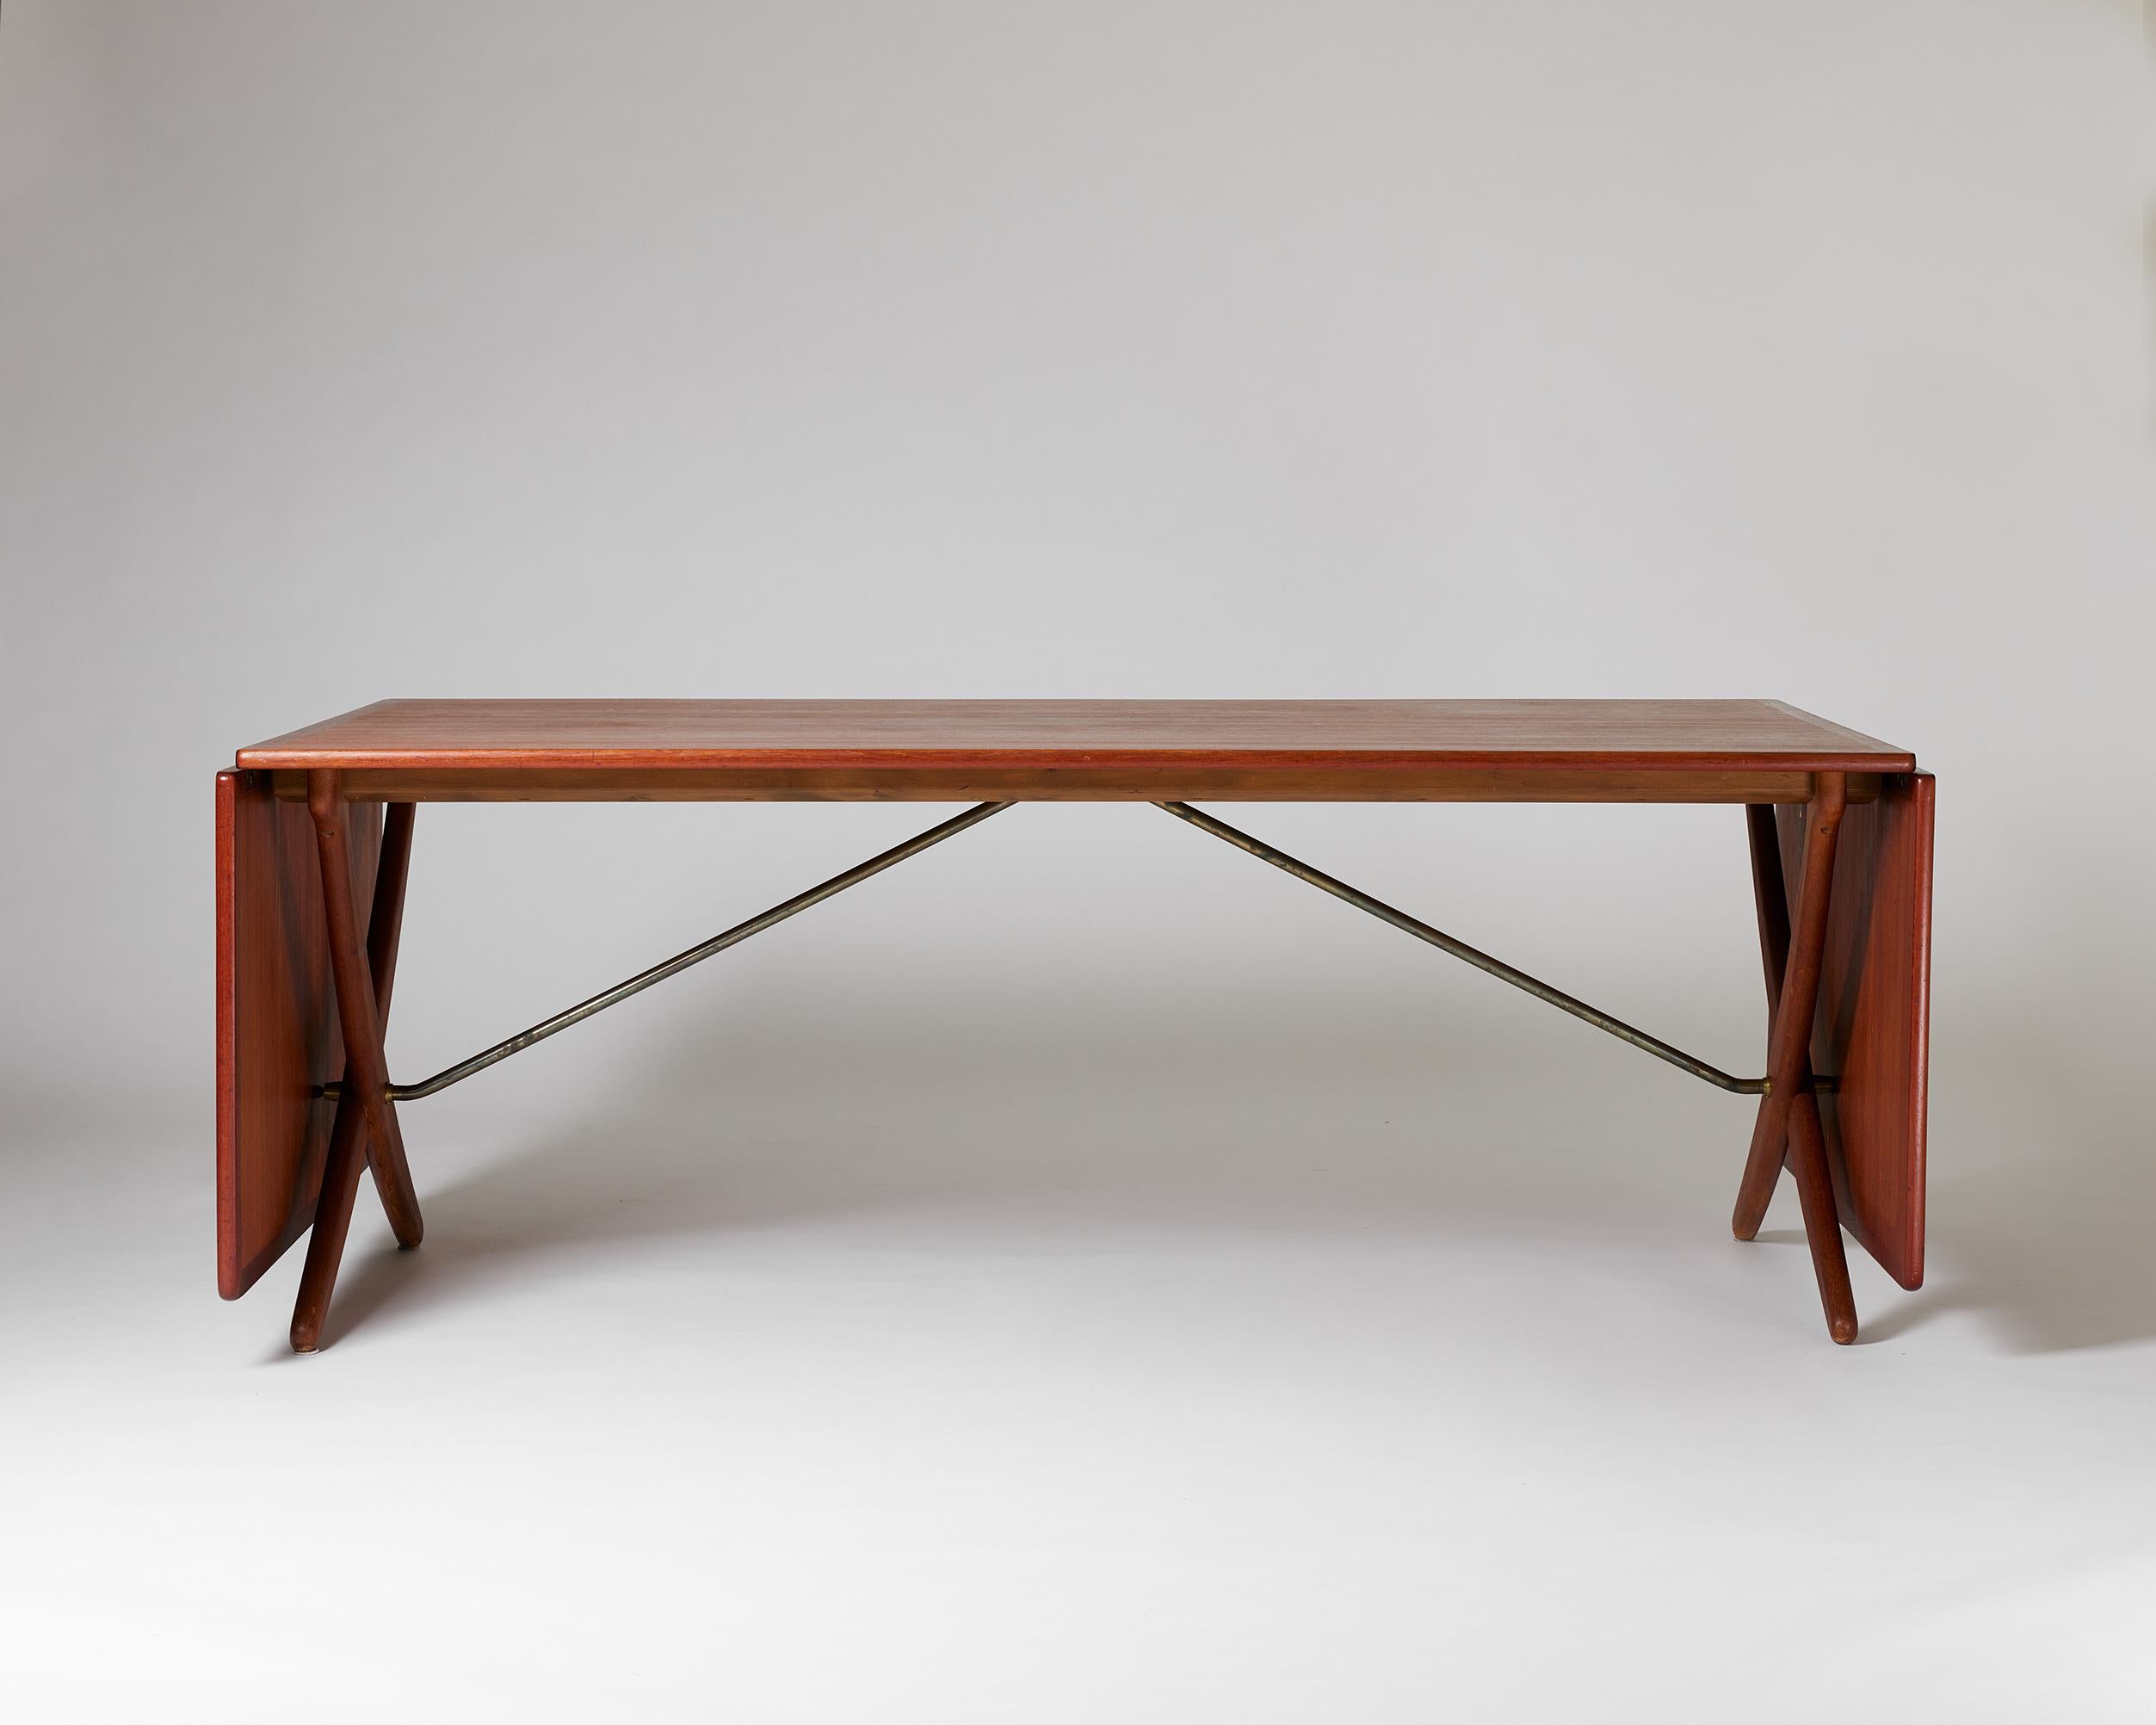 Danish Dining table ‘Sabre Leg’ designed by Hans J. Wegner for Andreas Tuck, Denmark